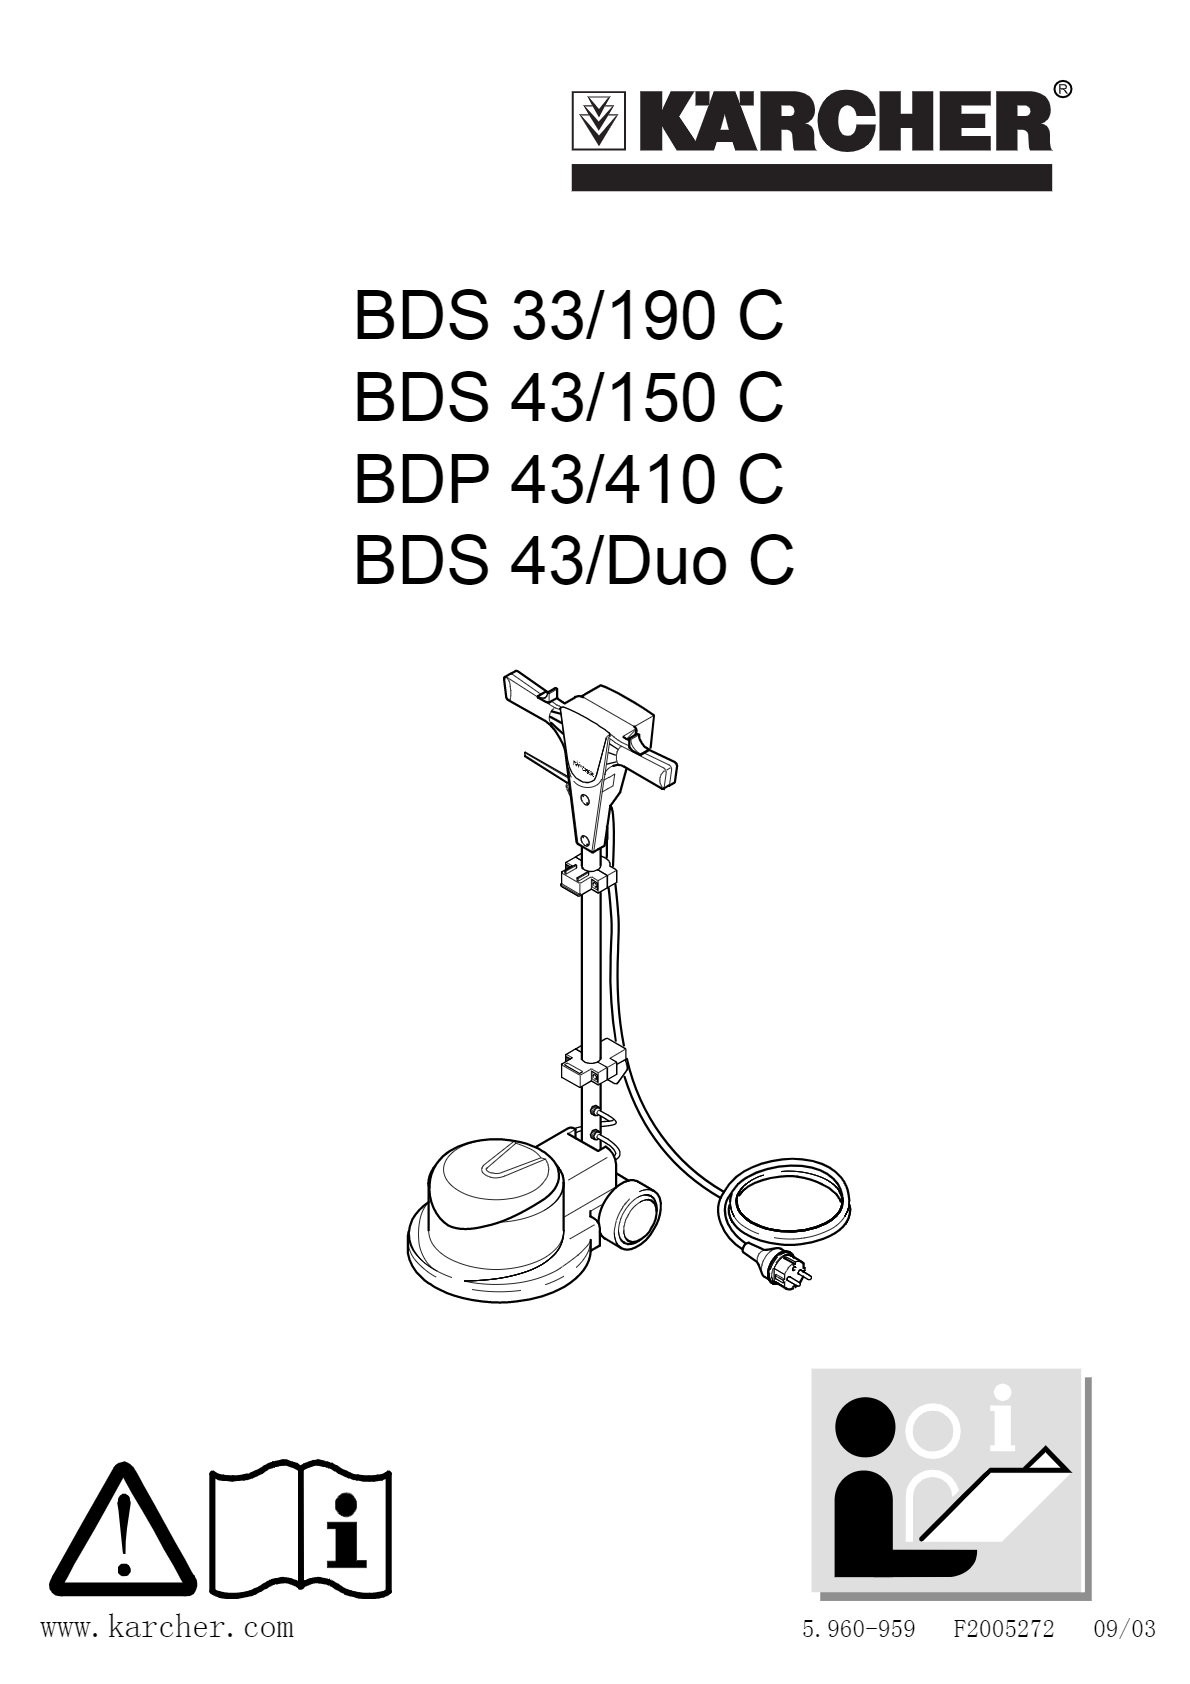 單擦機 BDS 43/150 C Classic *CN說明書下載